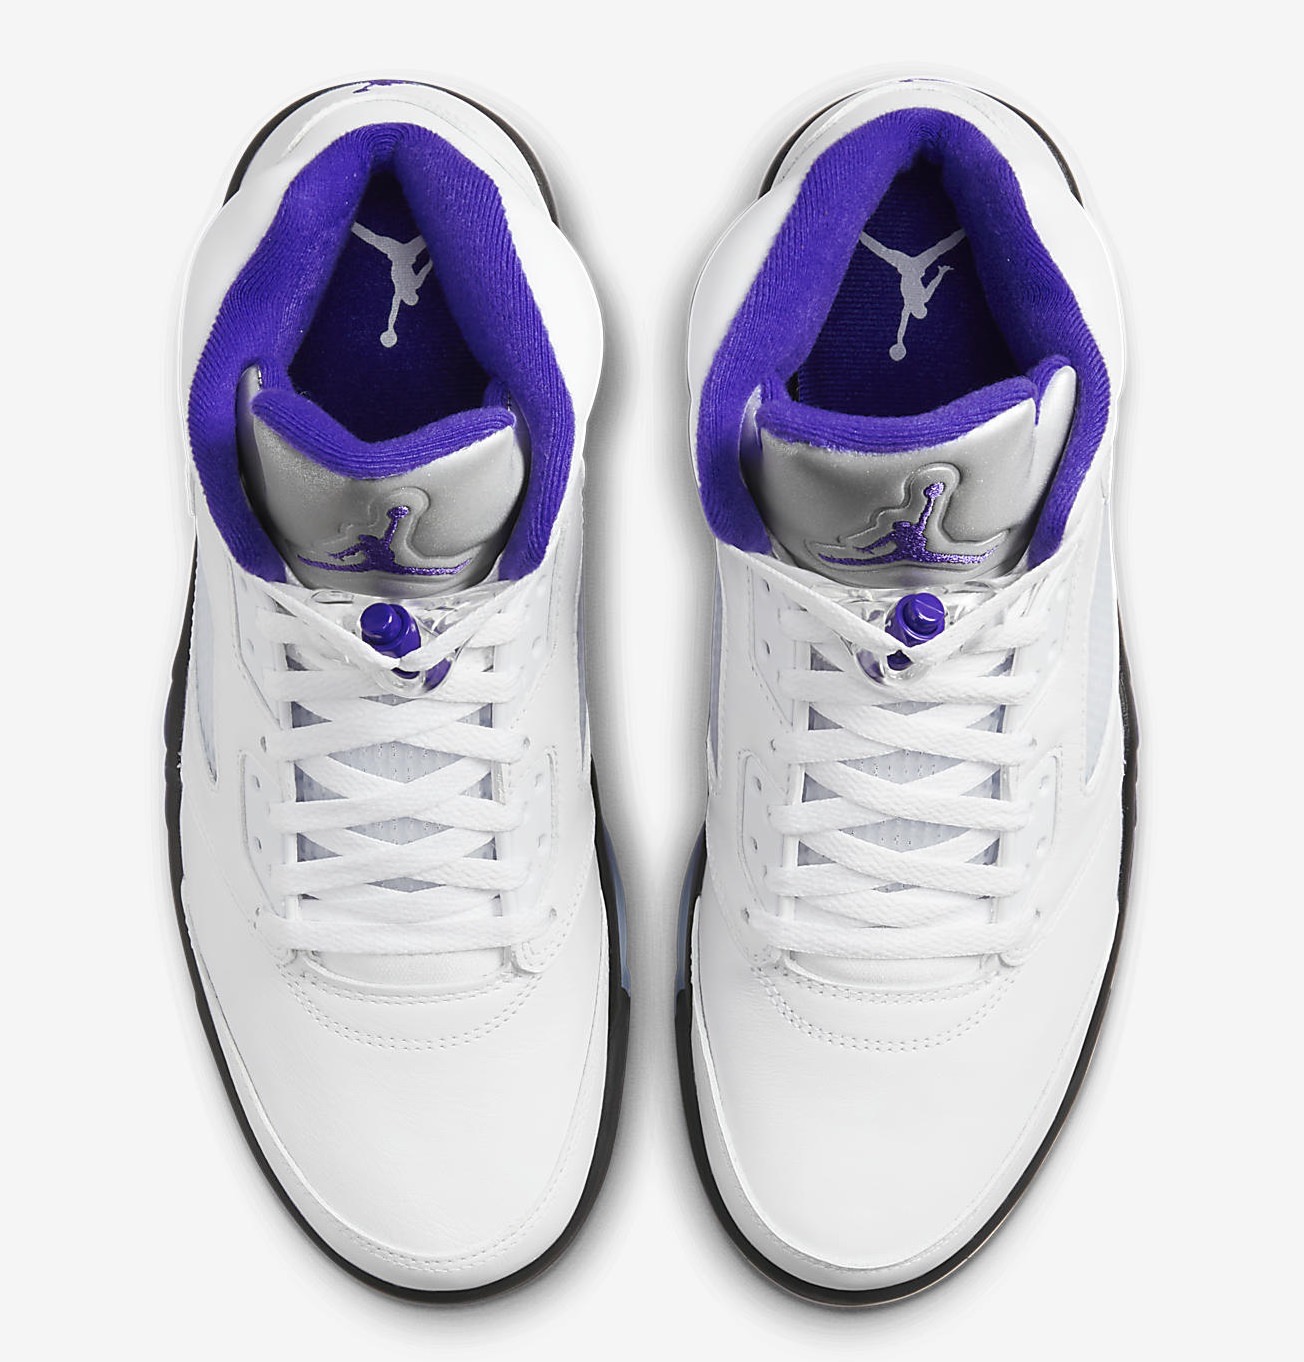 Air Jordan 5 Grape 2013 Retro Release Date - Sneaker Bar Detroit